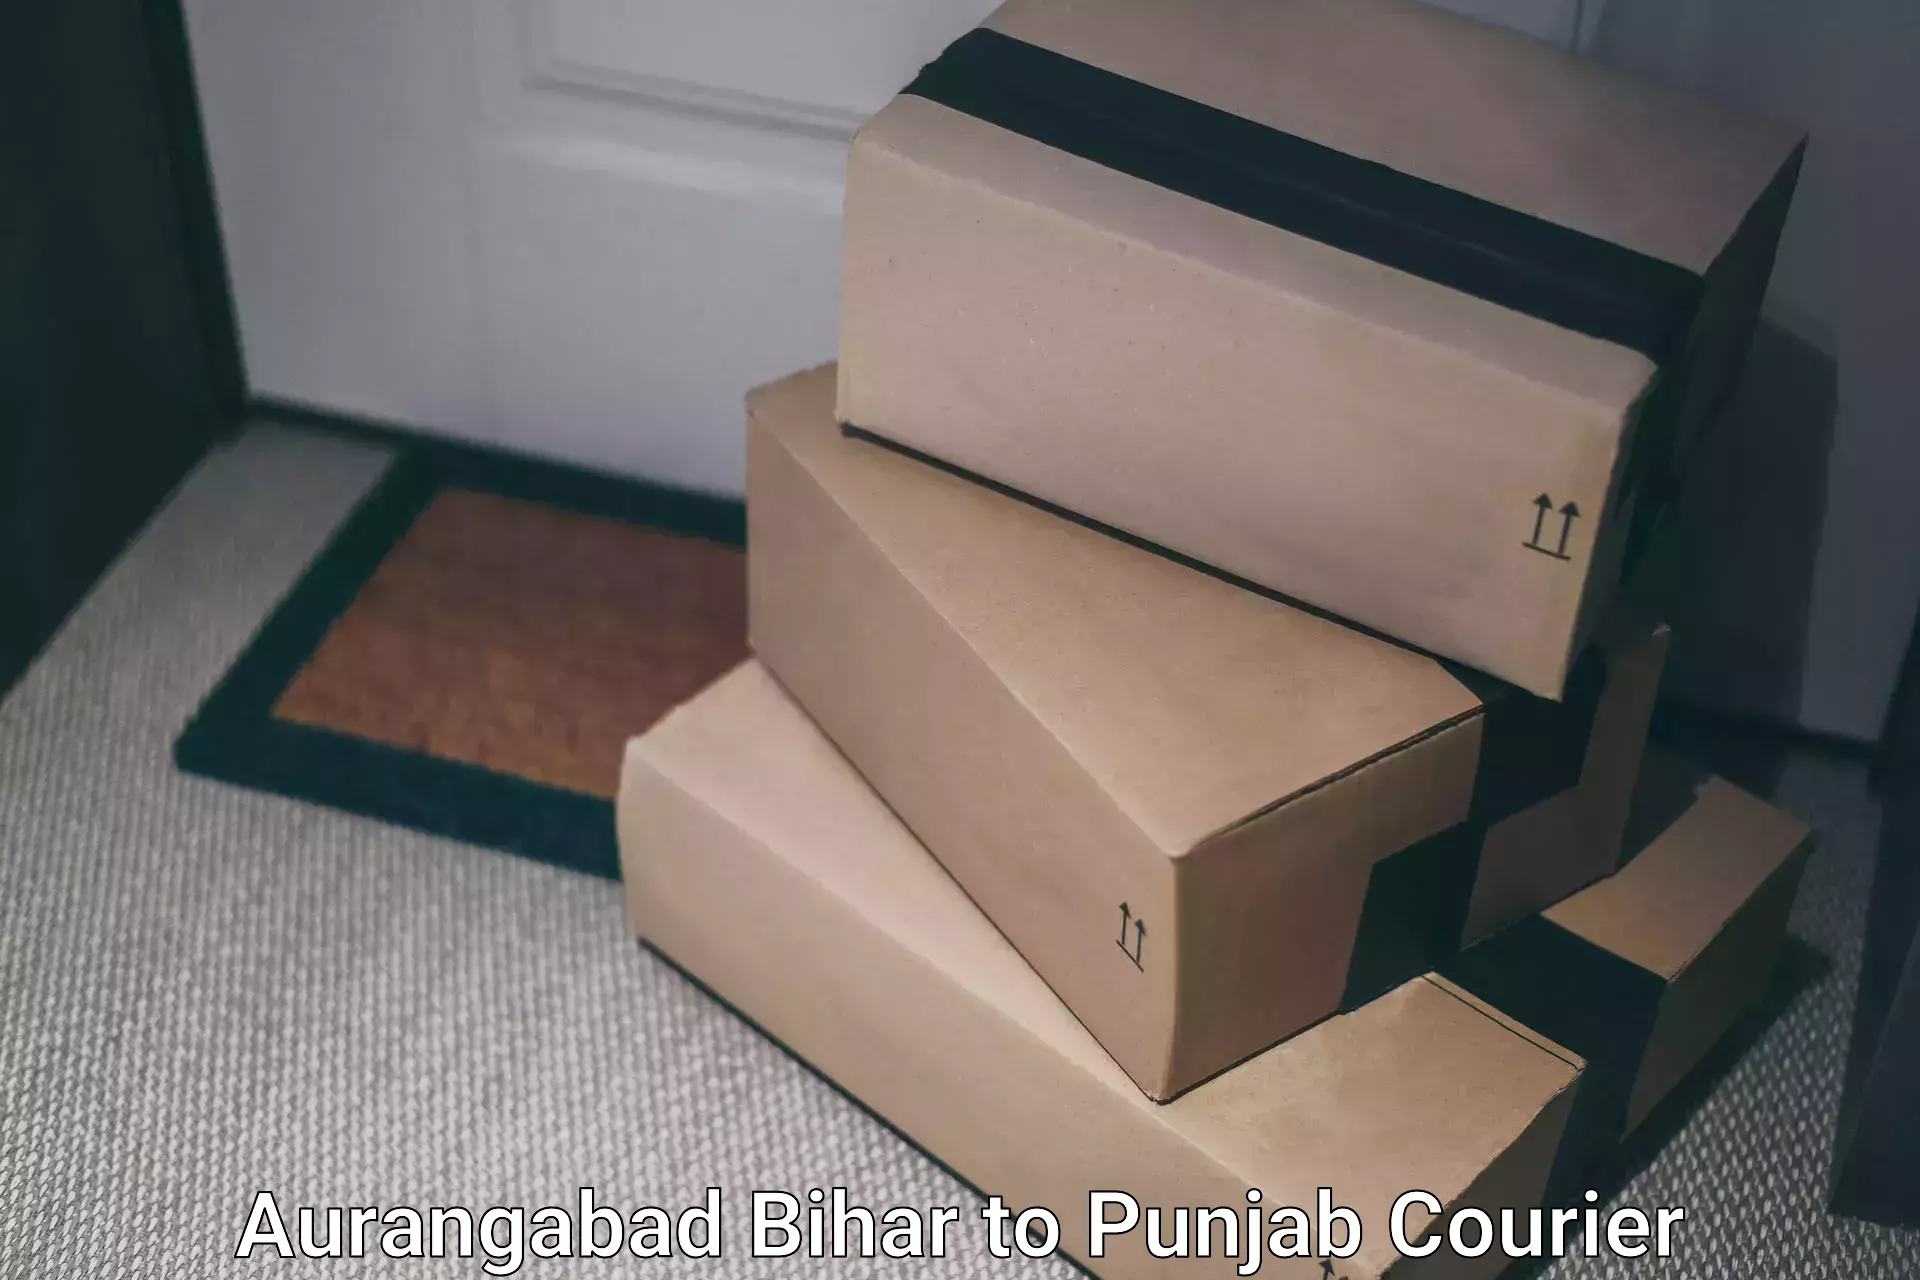 Modern courier technology Aurangabad Bihar to Begowal